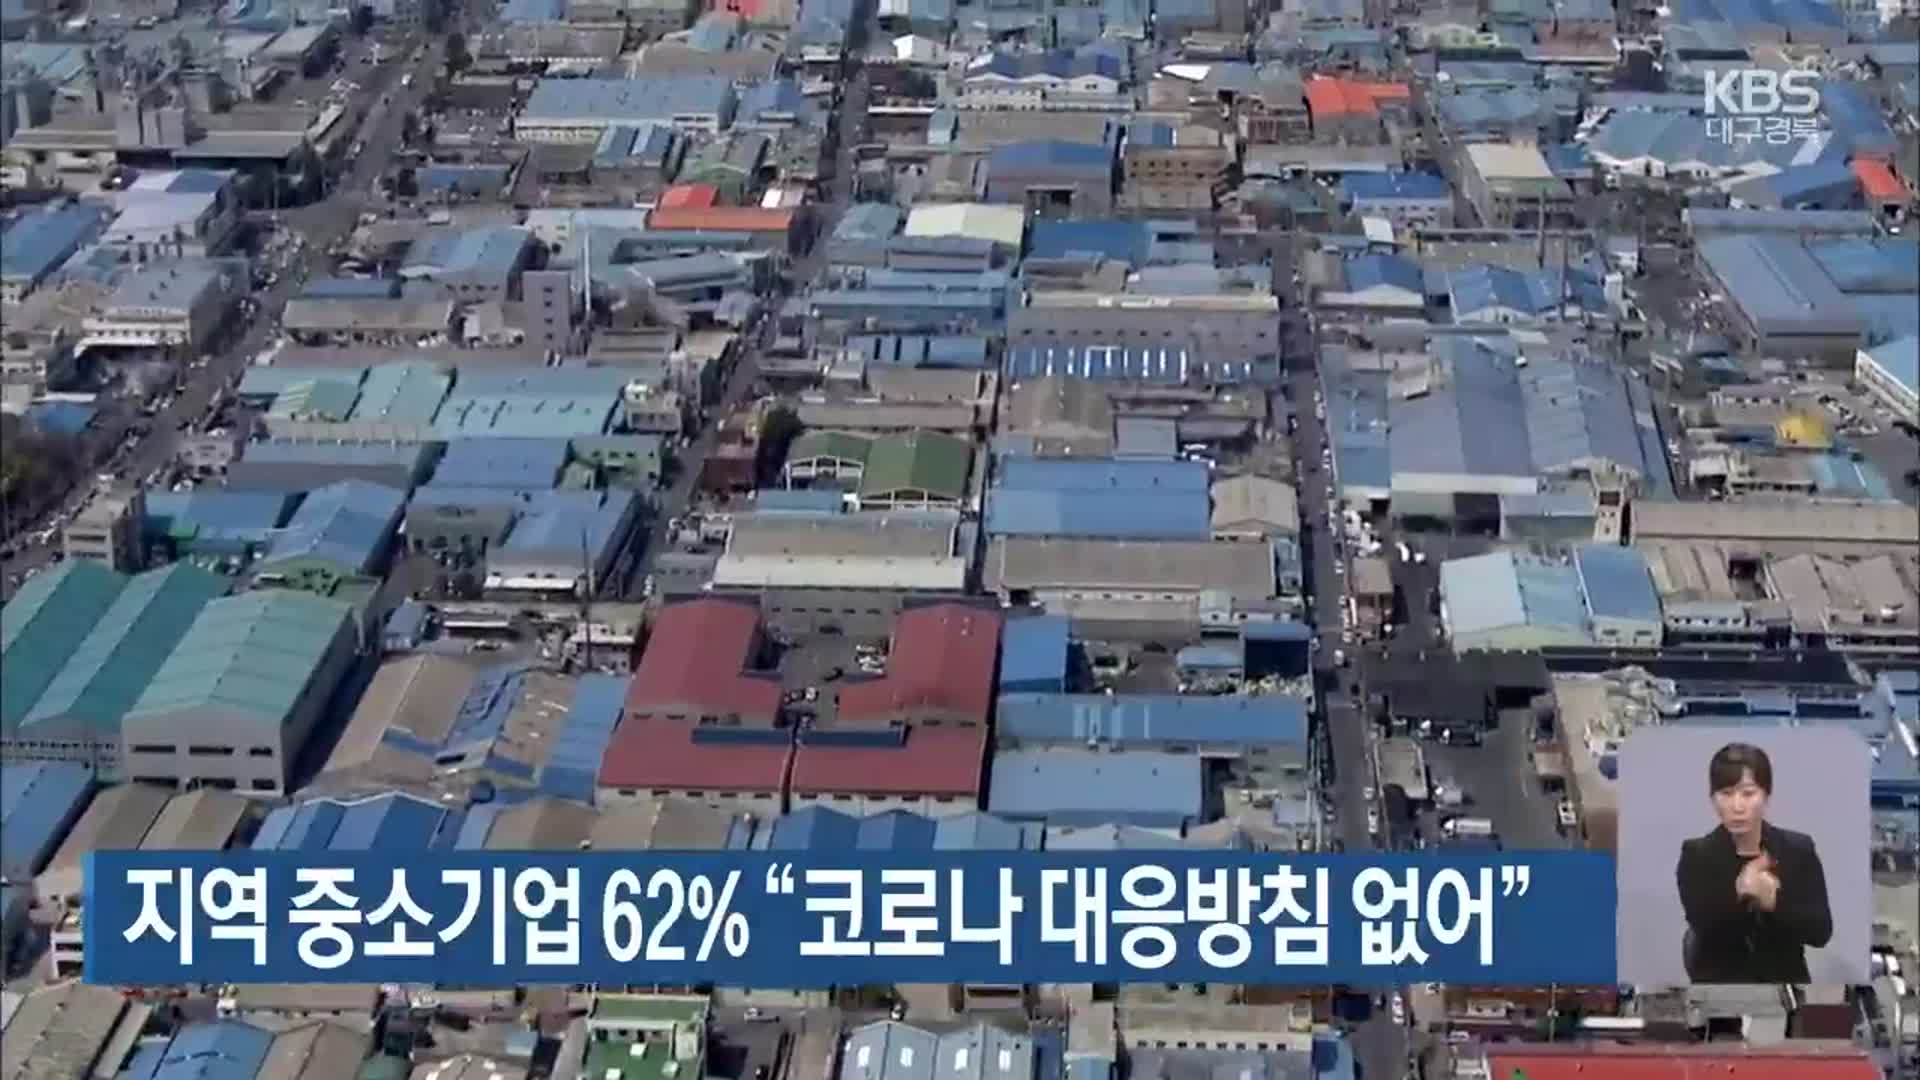 대구·경북 지역 중소기업 62% “코로나19 대응방침 없어”